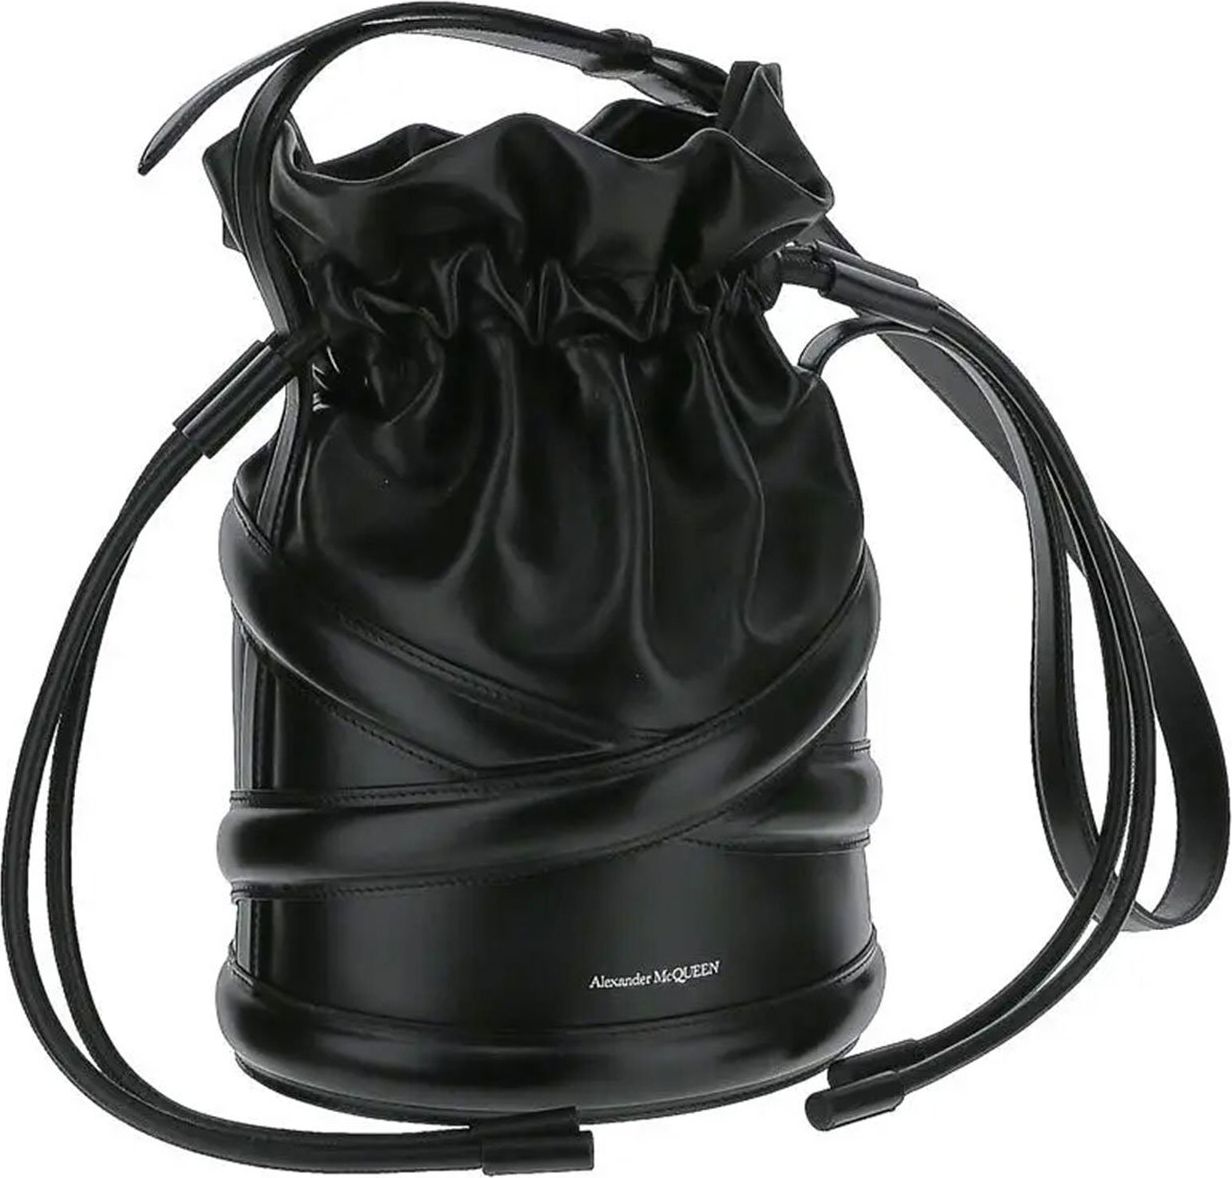 Alexander McQueen The Soft Curve bucket bag - black | Winkelstraat.nl